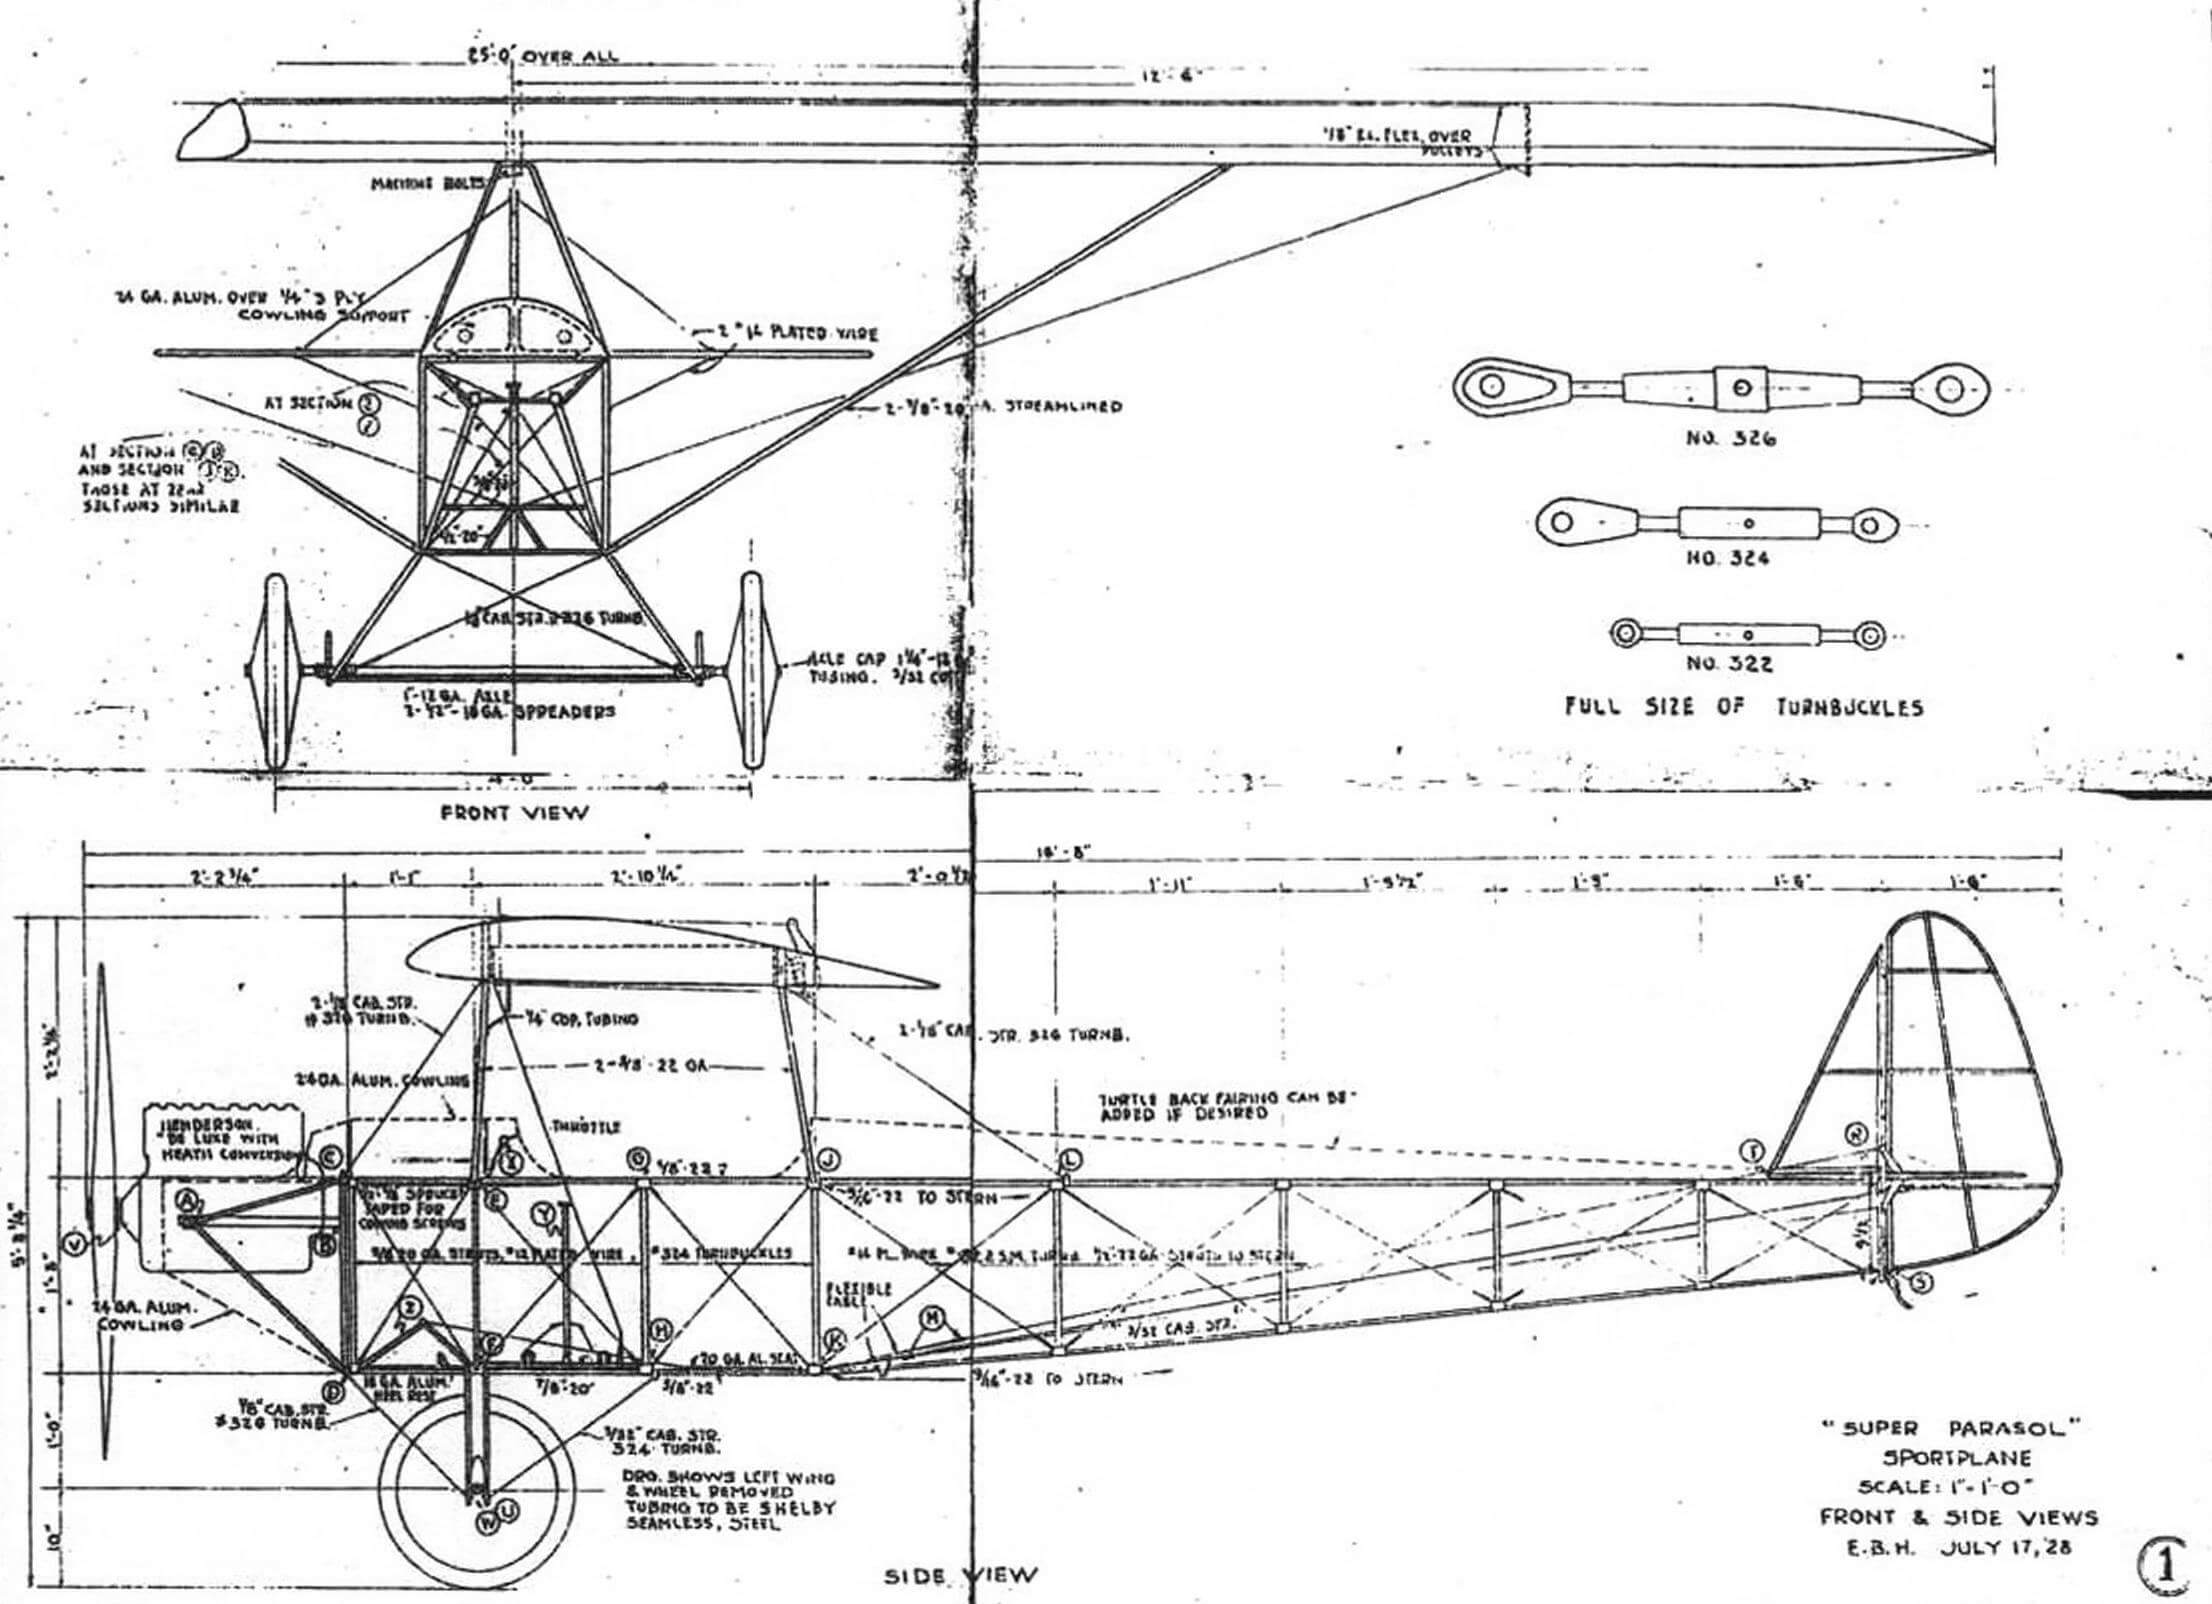 Копия одного из чертежей набора, предлагаемого компанией Э. Хита любителям авиации для самостоятельной постройки легкого самолета